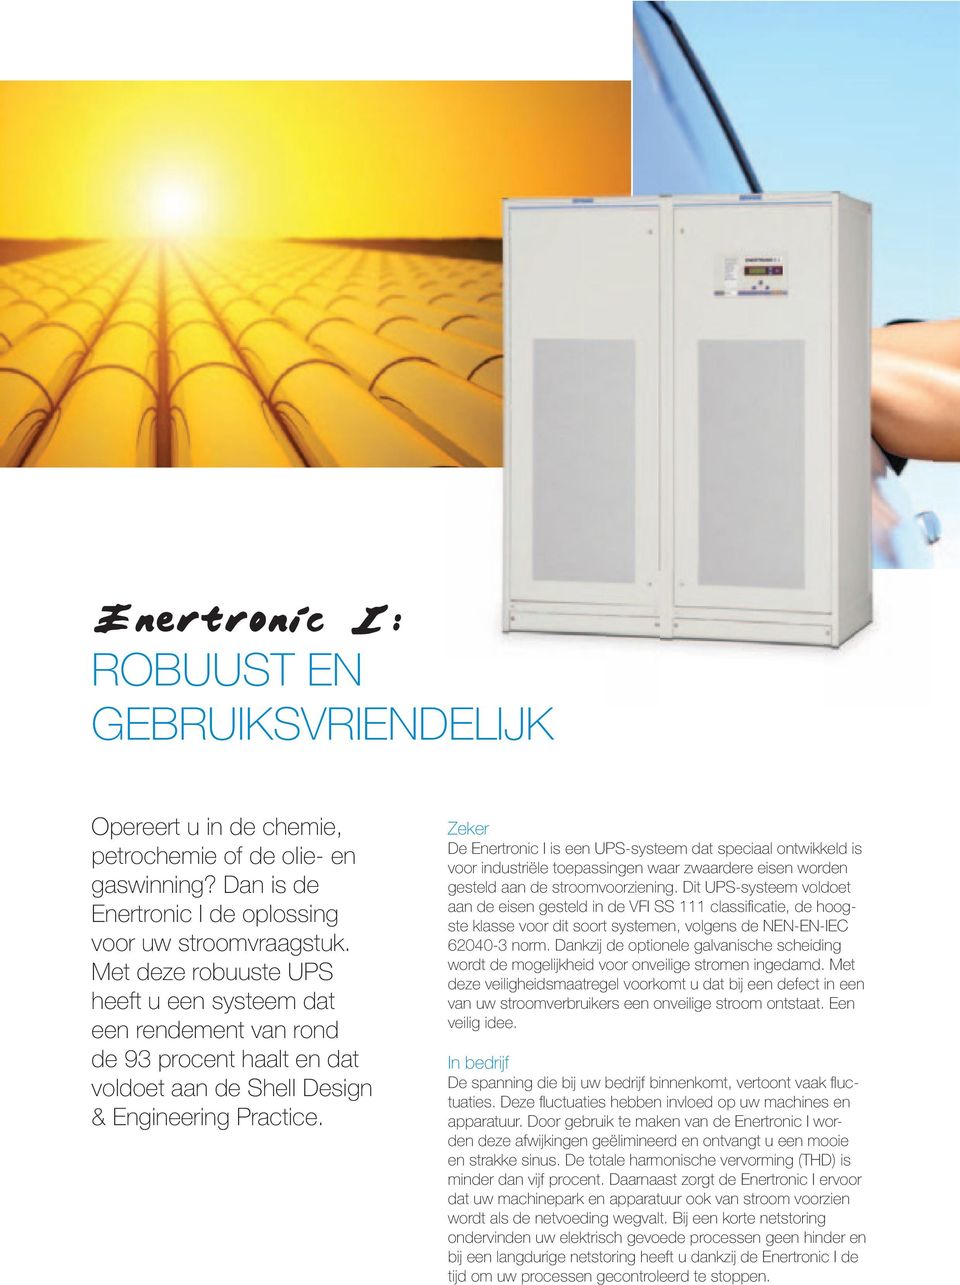 Zeker De Enertronic I is een UPS-systeem dat speciaal ontwikkeld is voor industriële toepassingen waar zwaardere eisen worden gesteld aan de stroomvoorziening.